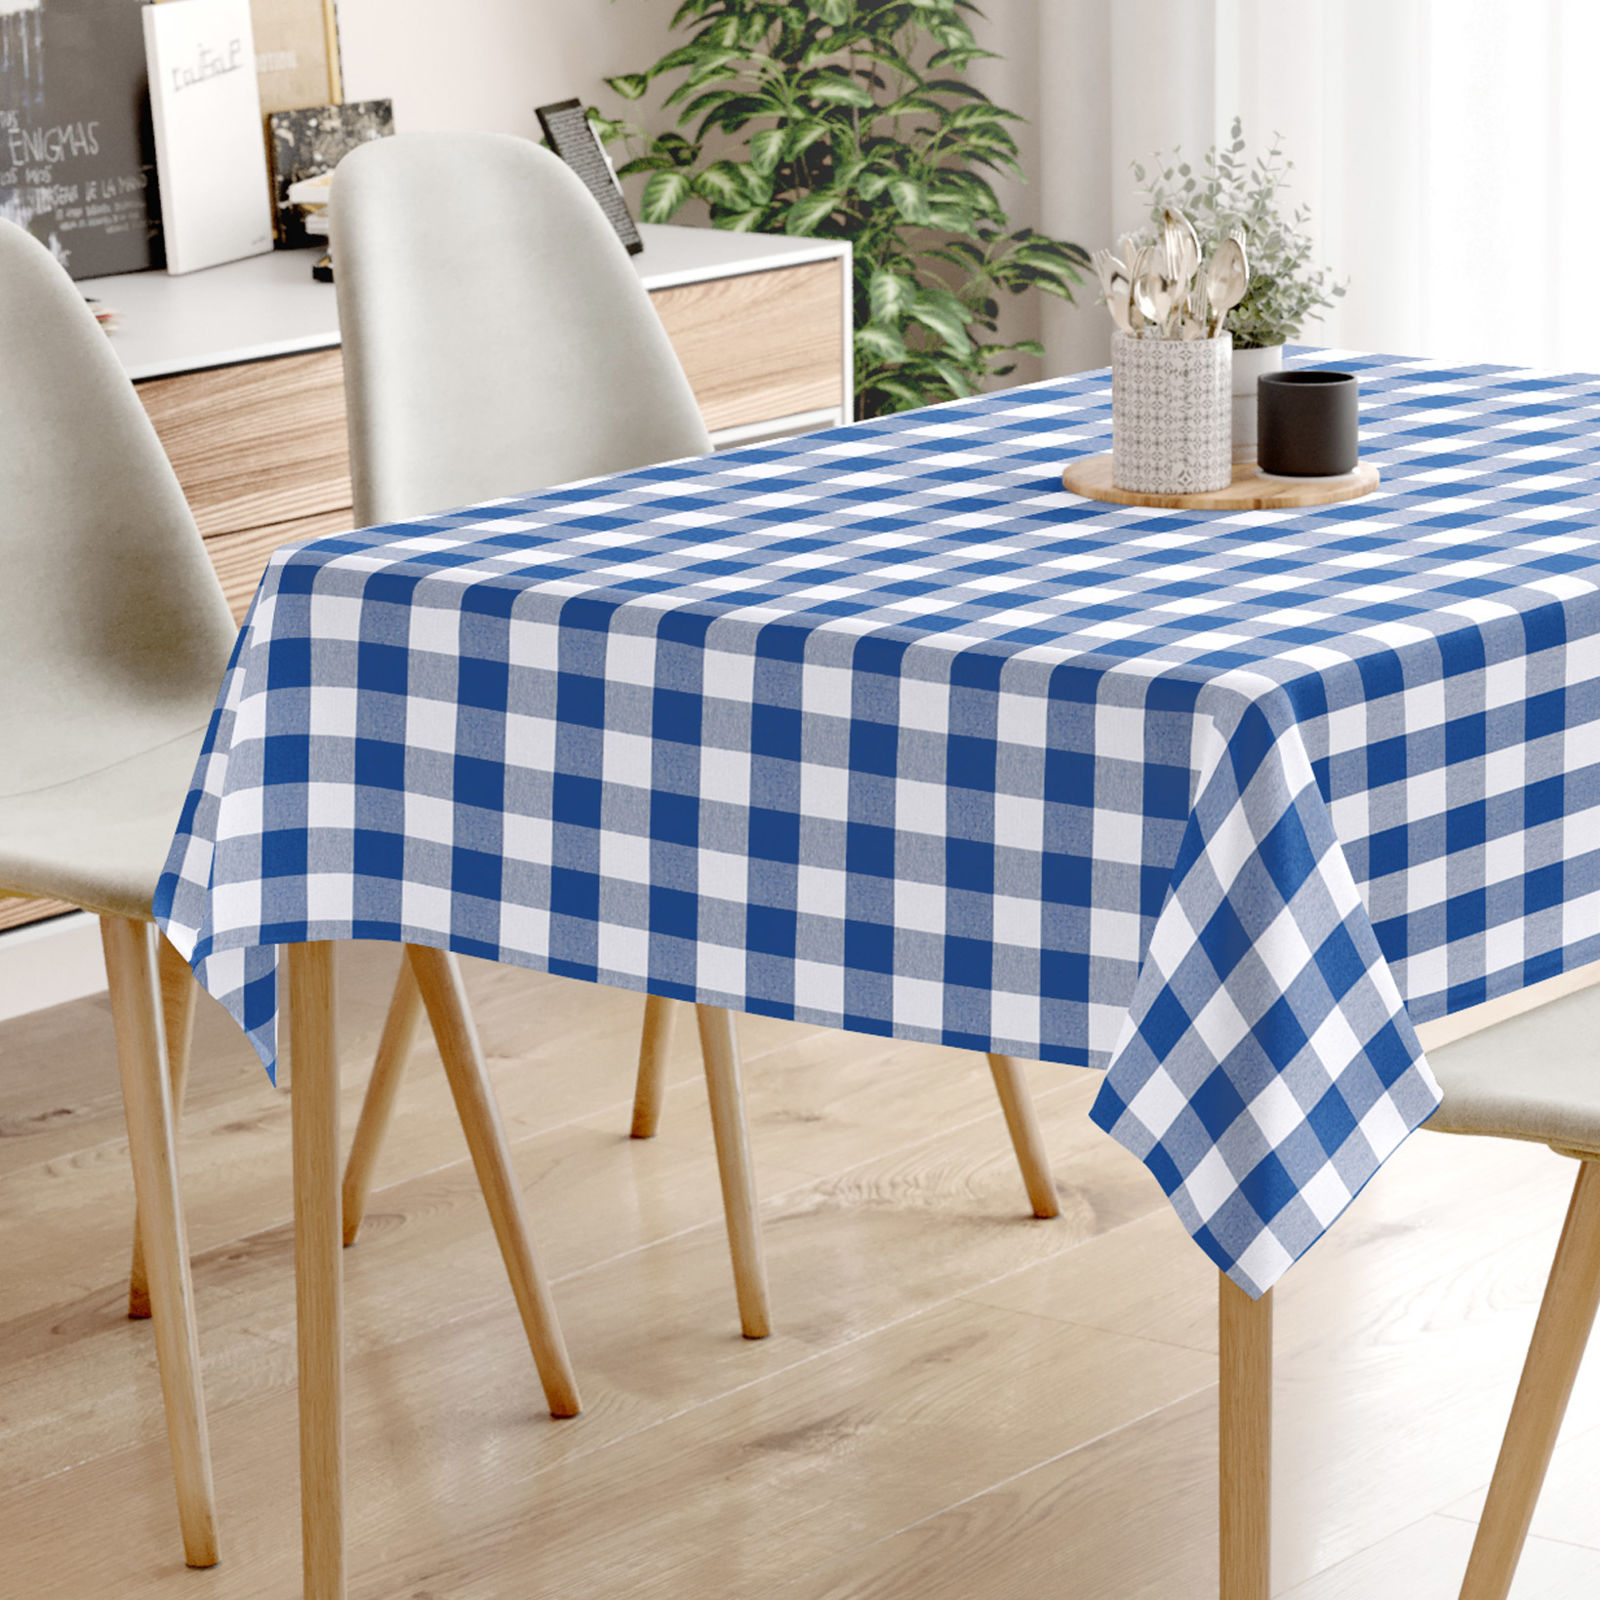 Față de masă decorativă MENORCA - carouri mari albastre și albe